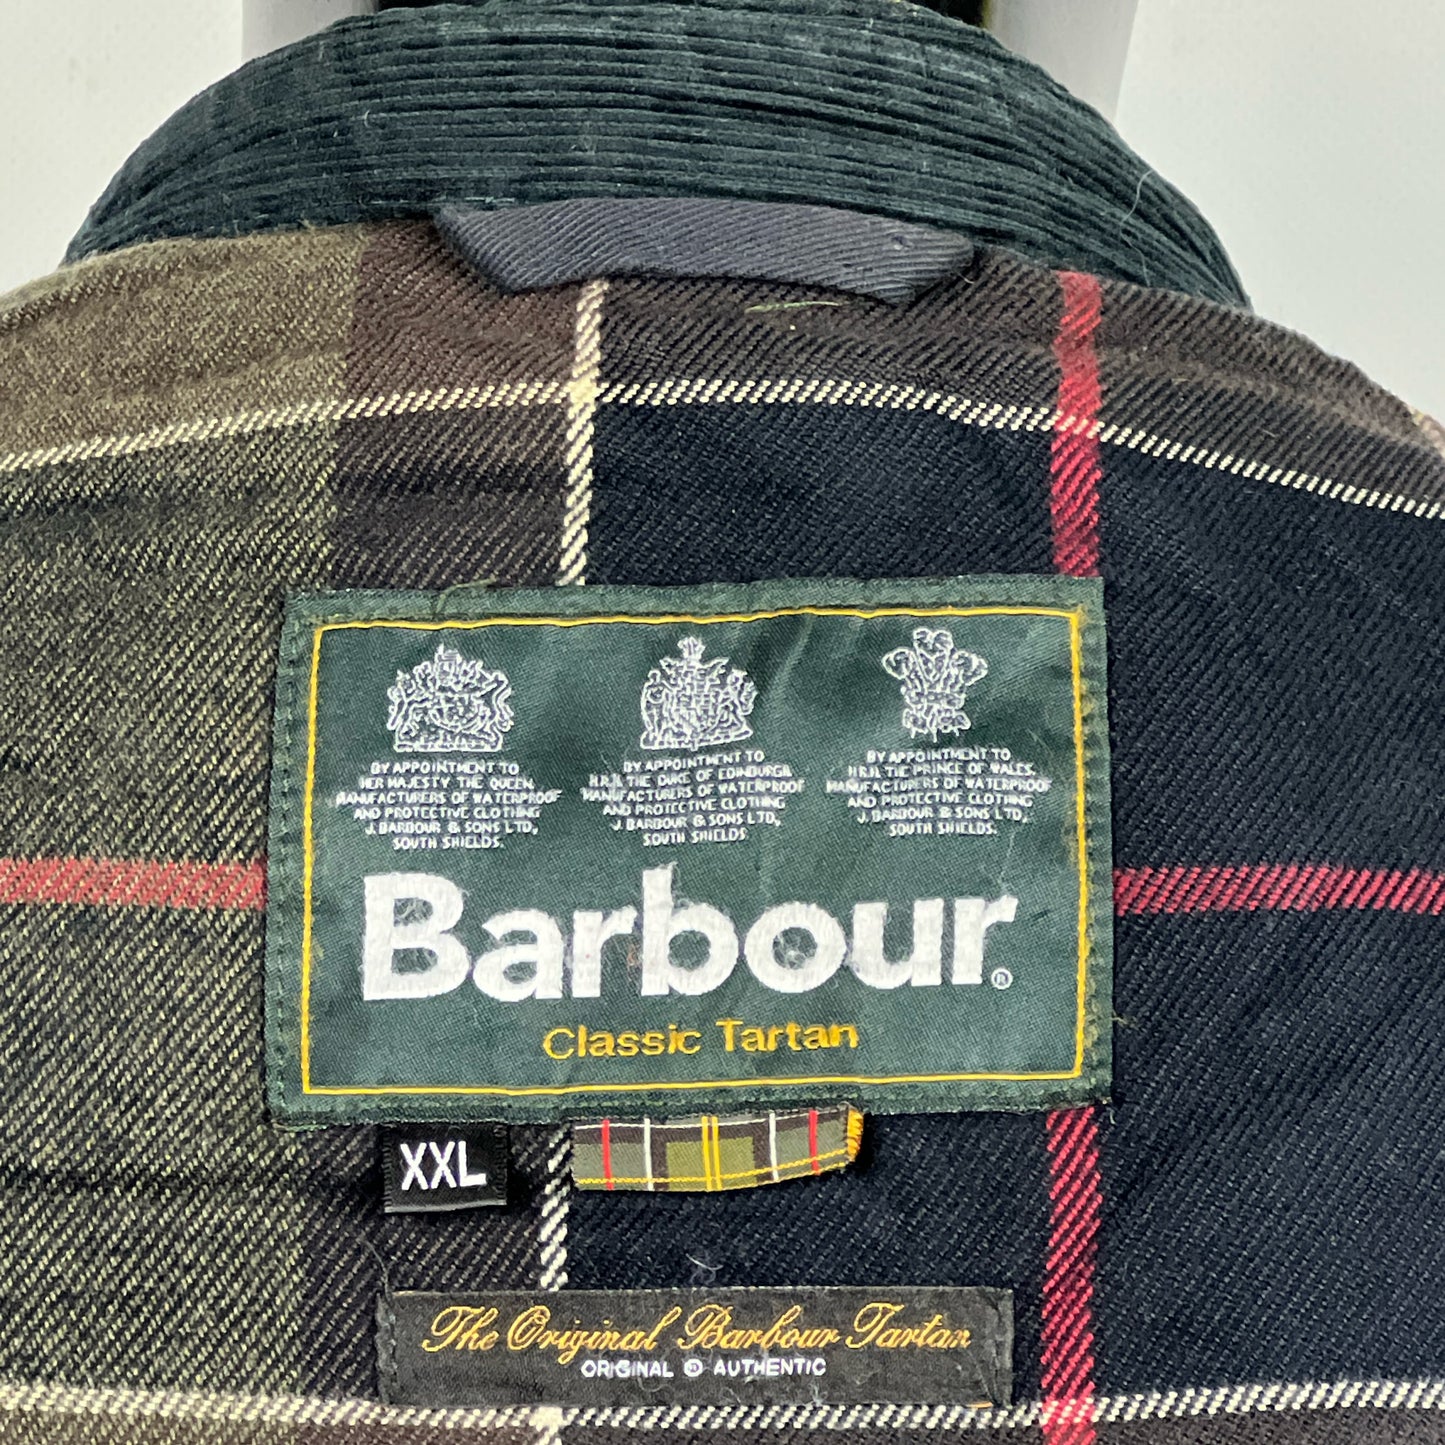 Giacca Barbour blu cerata uomo Carrbridge xxl -Navy Carrbridge Wax Jacket Size XXL